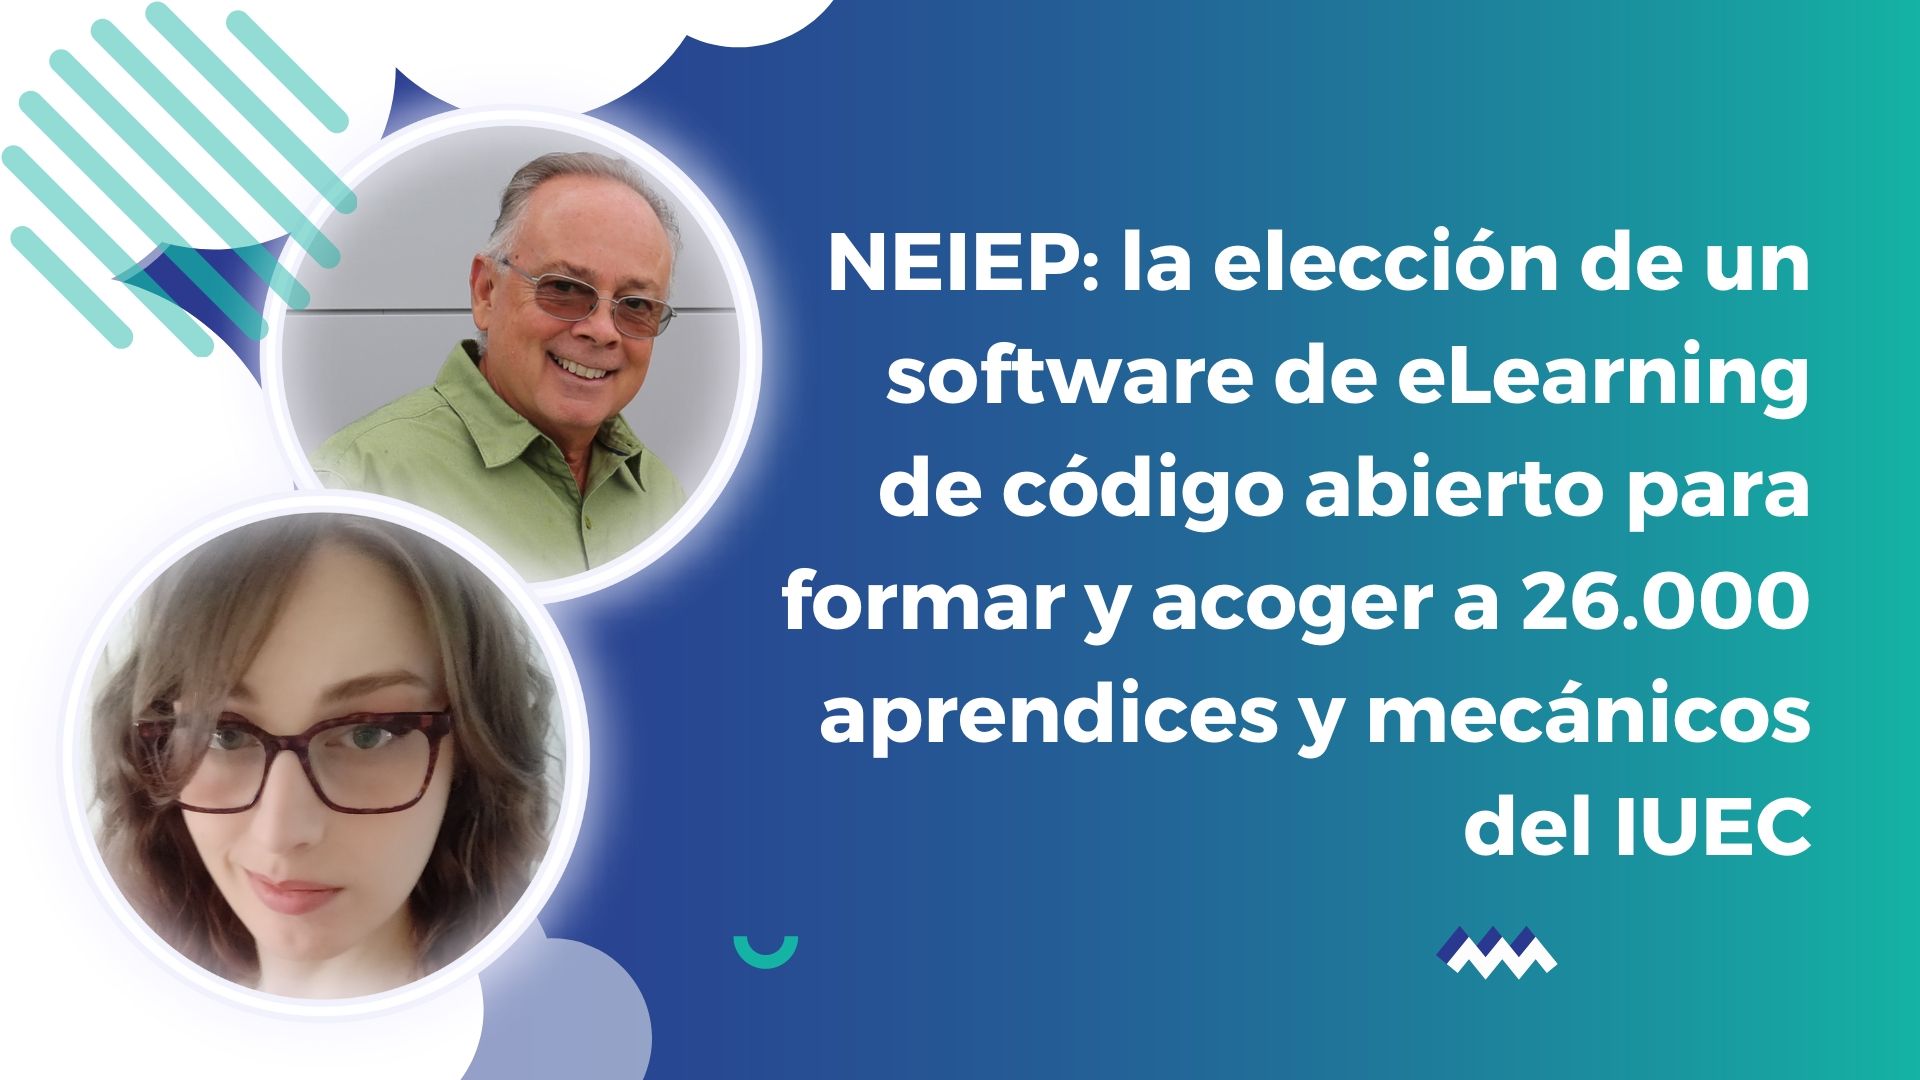 NEIEP: la elección de un software de eLearning de código abierto para formar y acoger a 26.000 aprendices y mecánicos del IUEC